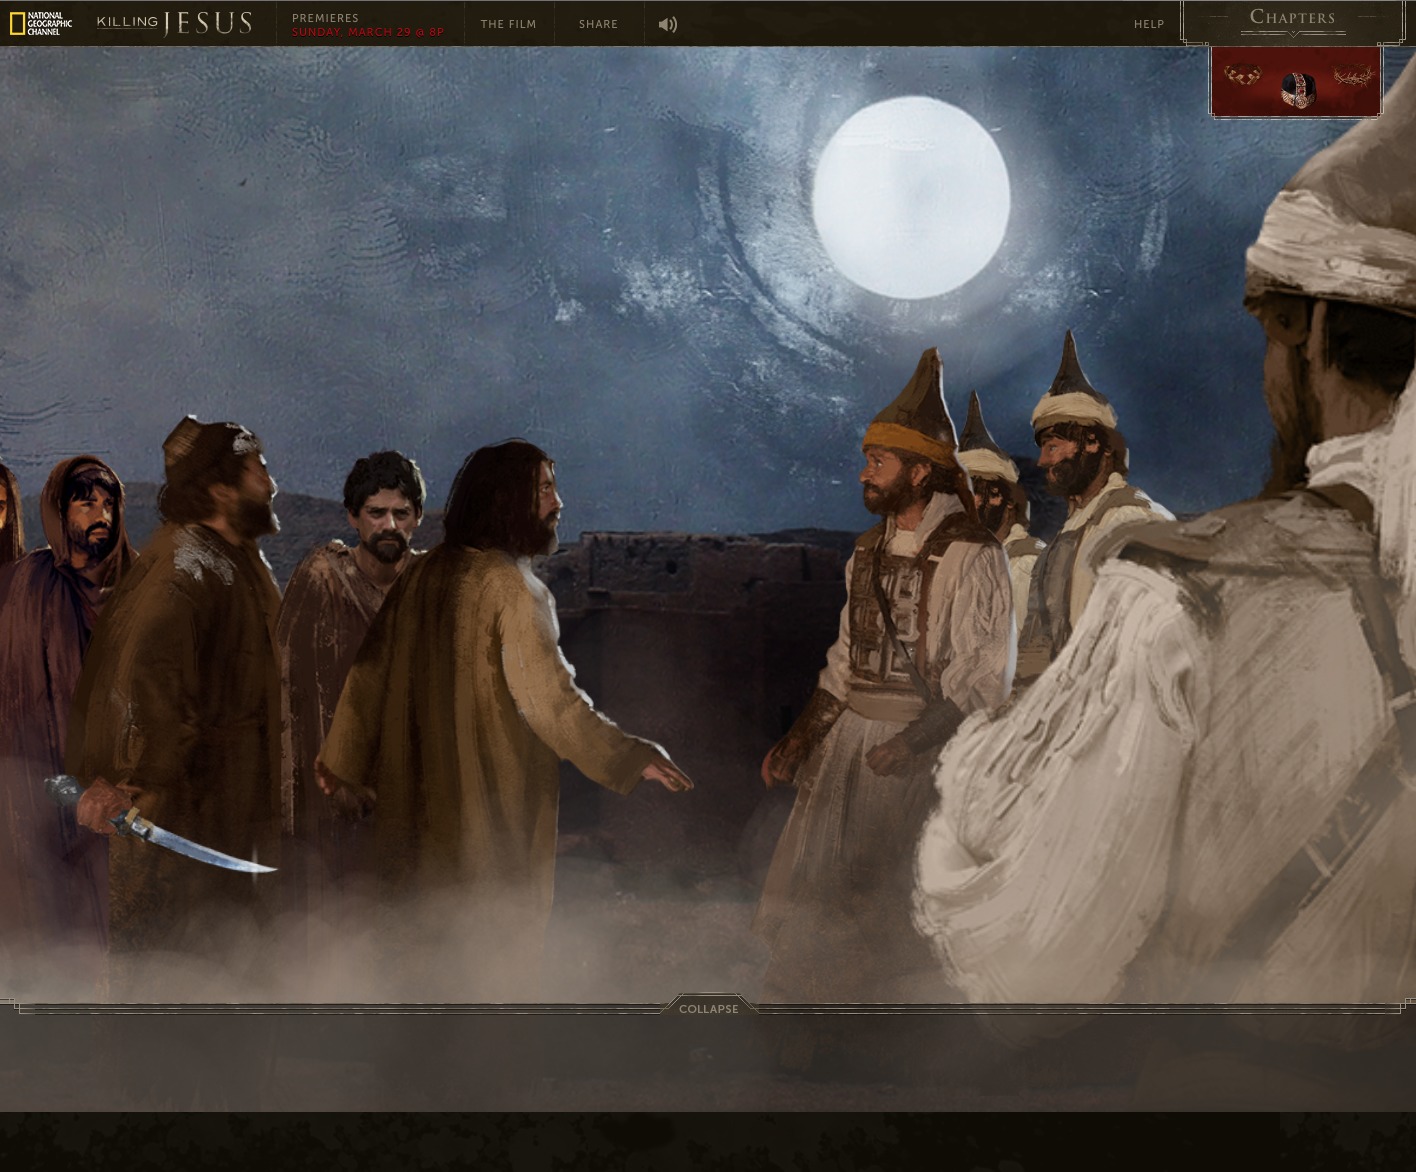 Art work from Nat geo Interactive 'Killing Jesus' website - Malchus apprehends Jesus in the Garden